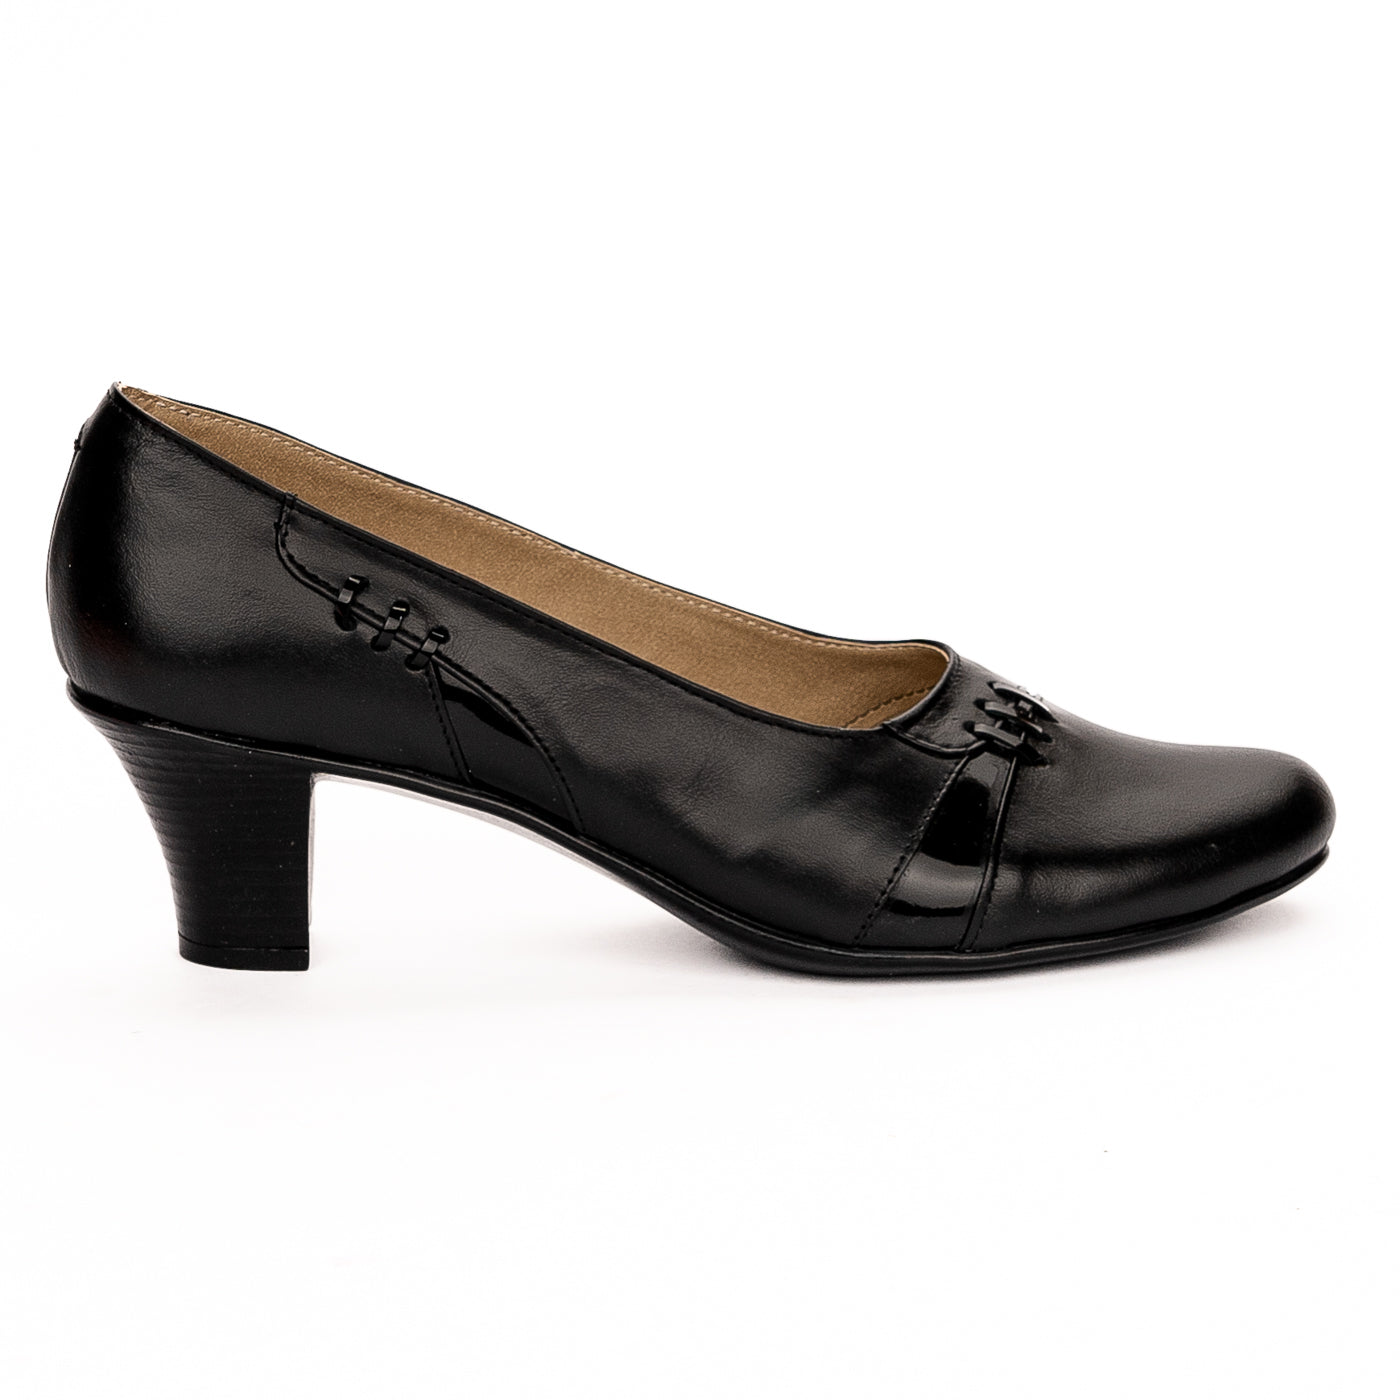 Pantofi dama din piele naturala neagra toc 6cm 13262